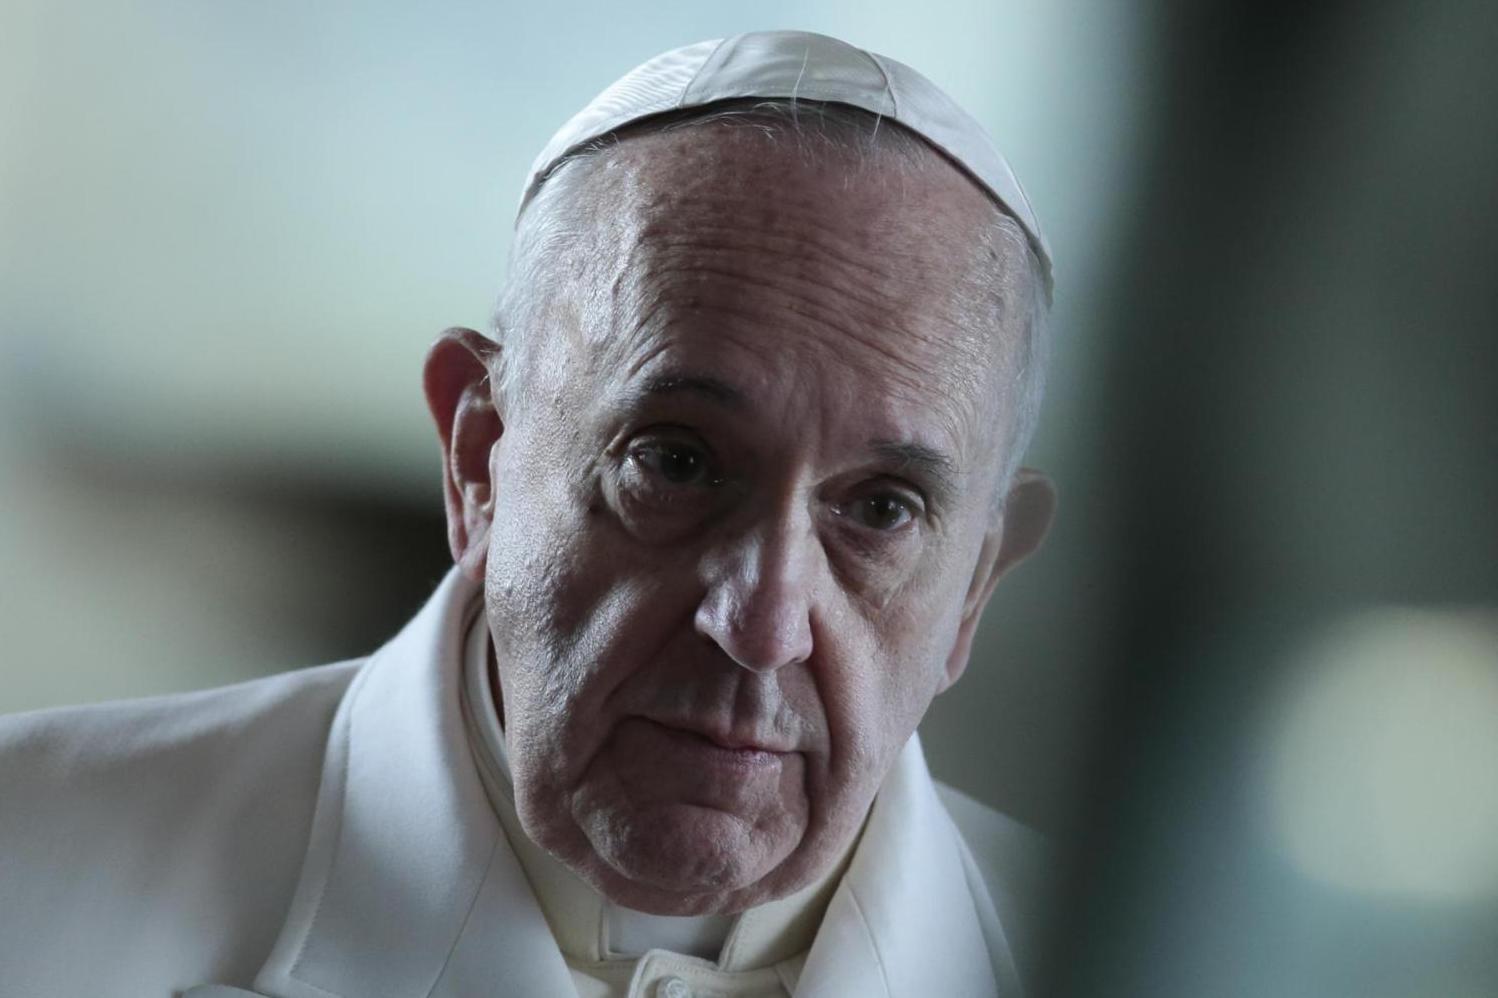 Боль Папы Франциска о терактах в Париже: атакован мир человечества